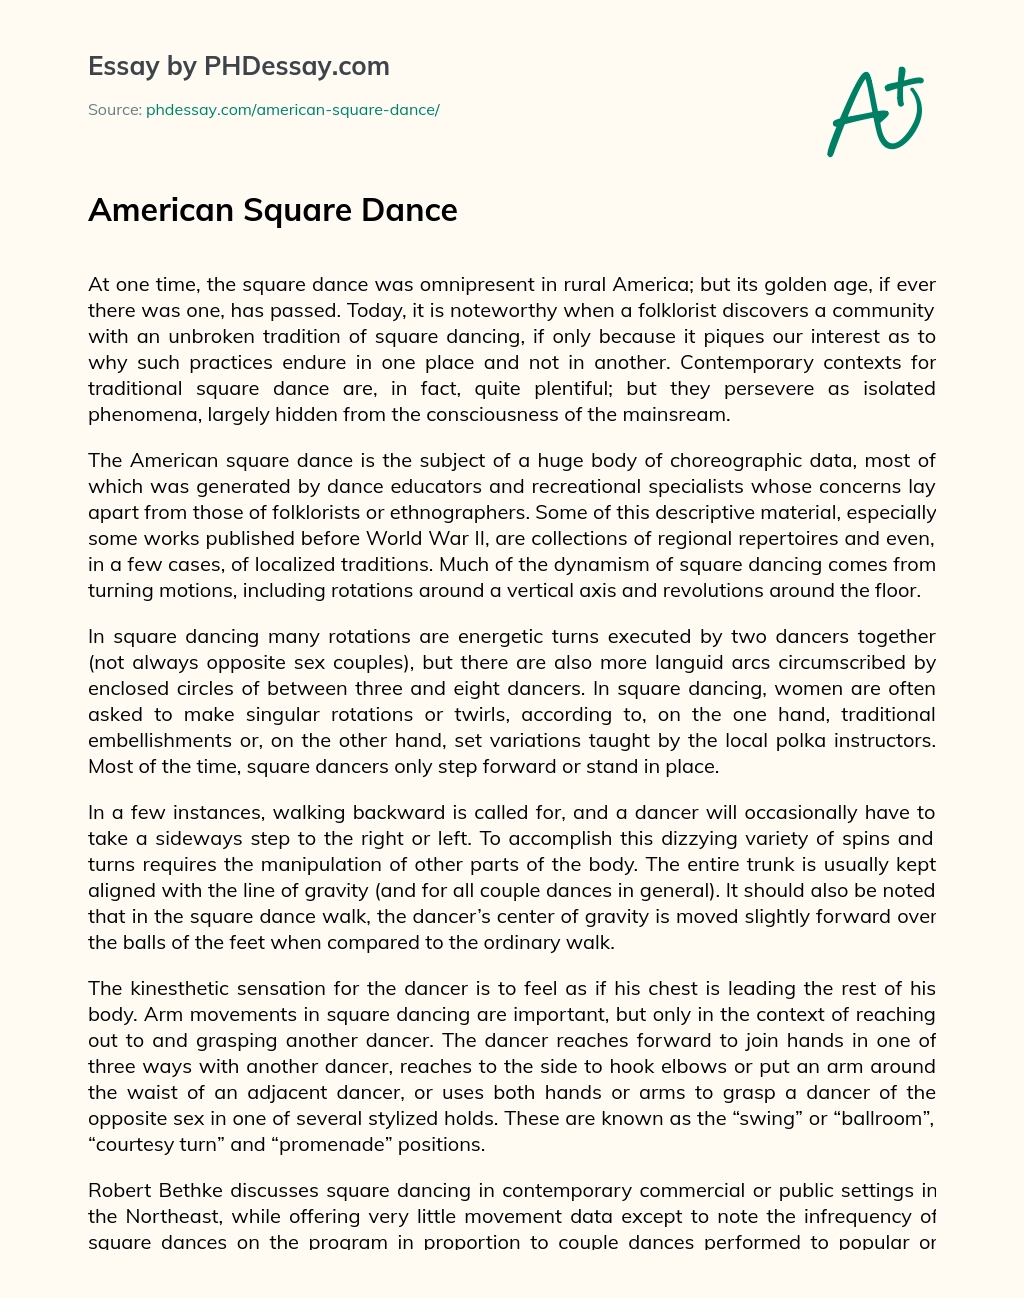 American Square Dance essay